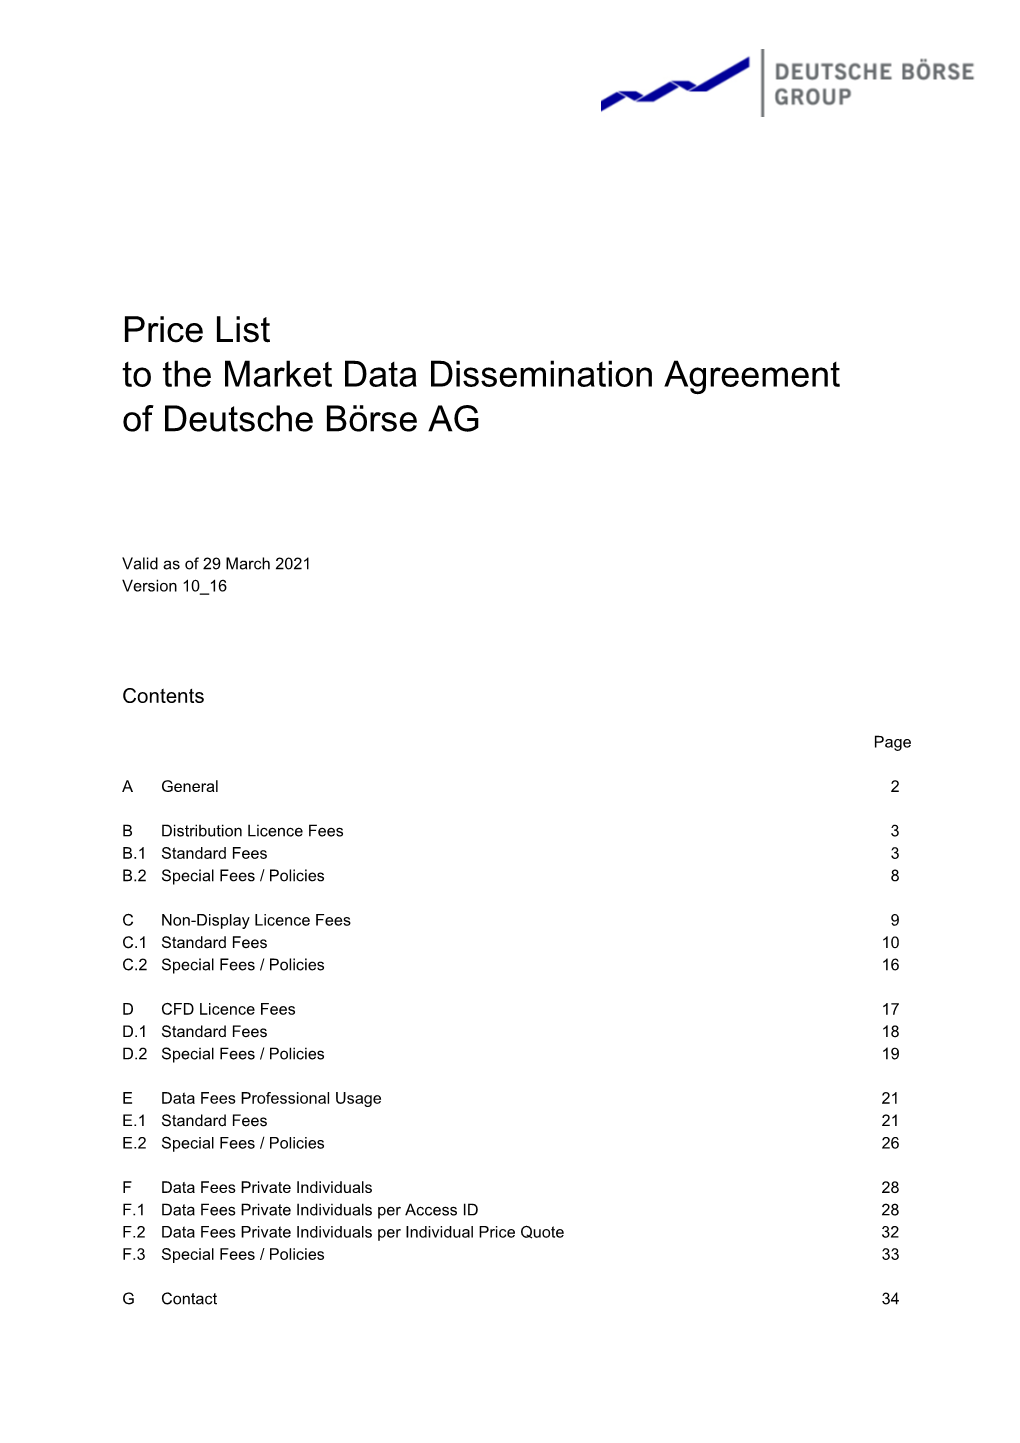 Price List to the Market Data Dissemination Agreement of Deutsche Börse AG